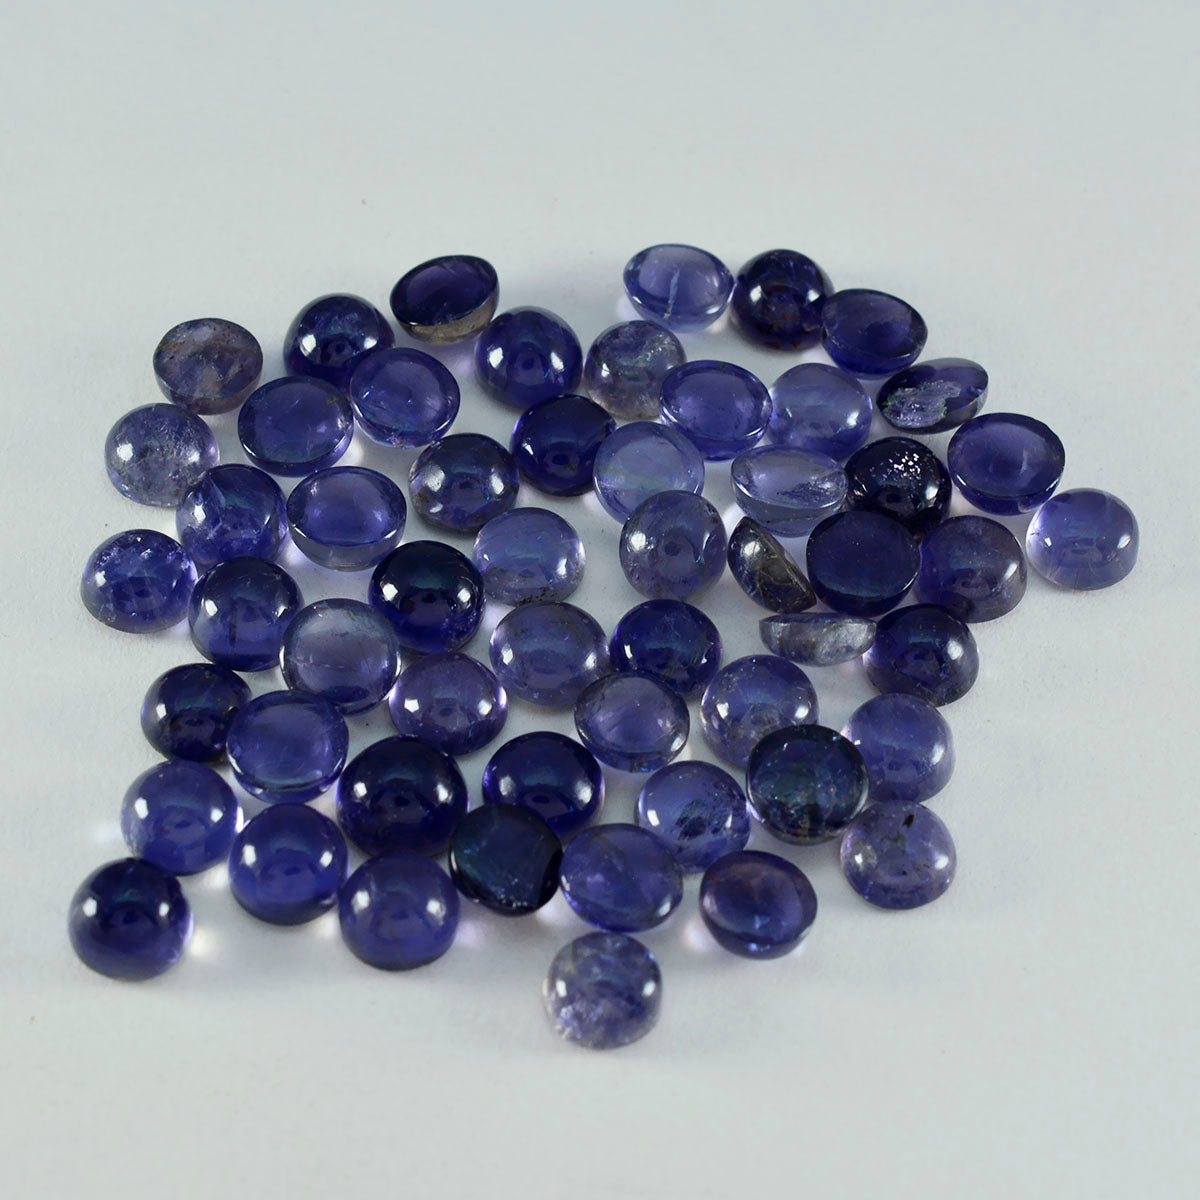 riyogems 1 pieza cabujón de iolita azul 6x6 mm forma redonda piedra preciosa de calidad AAA